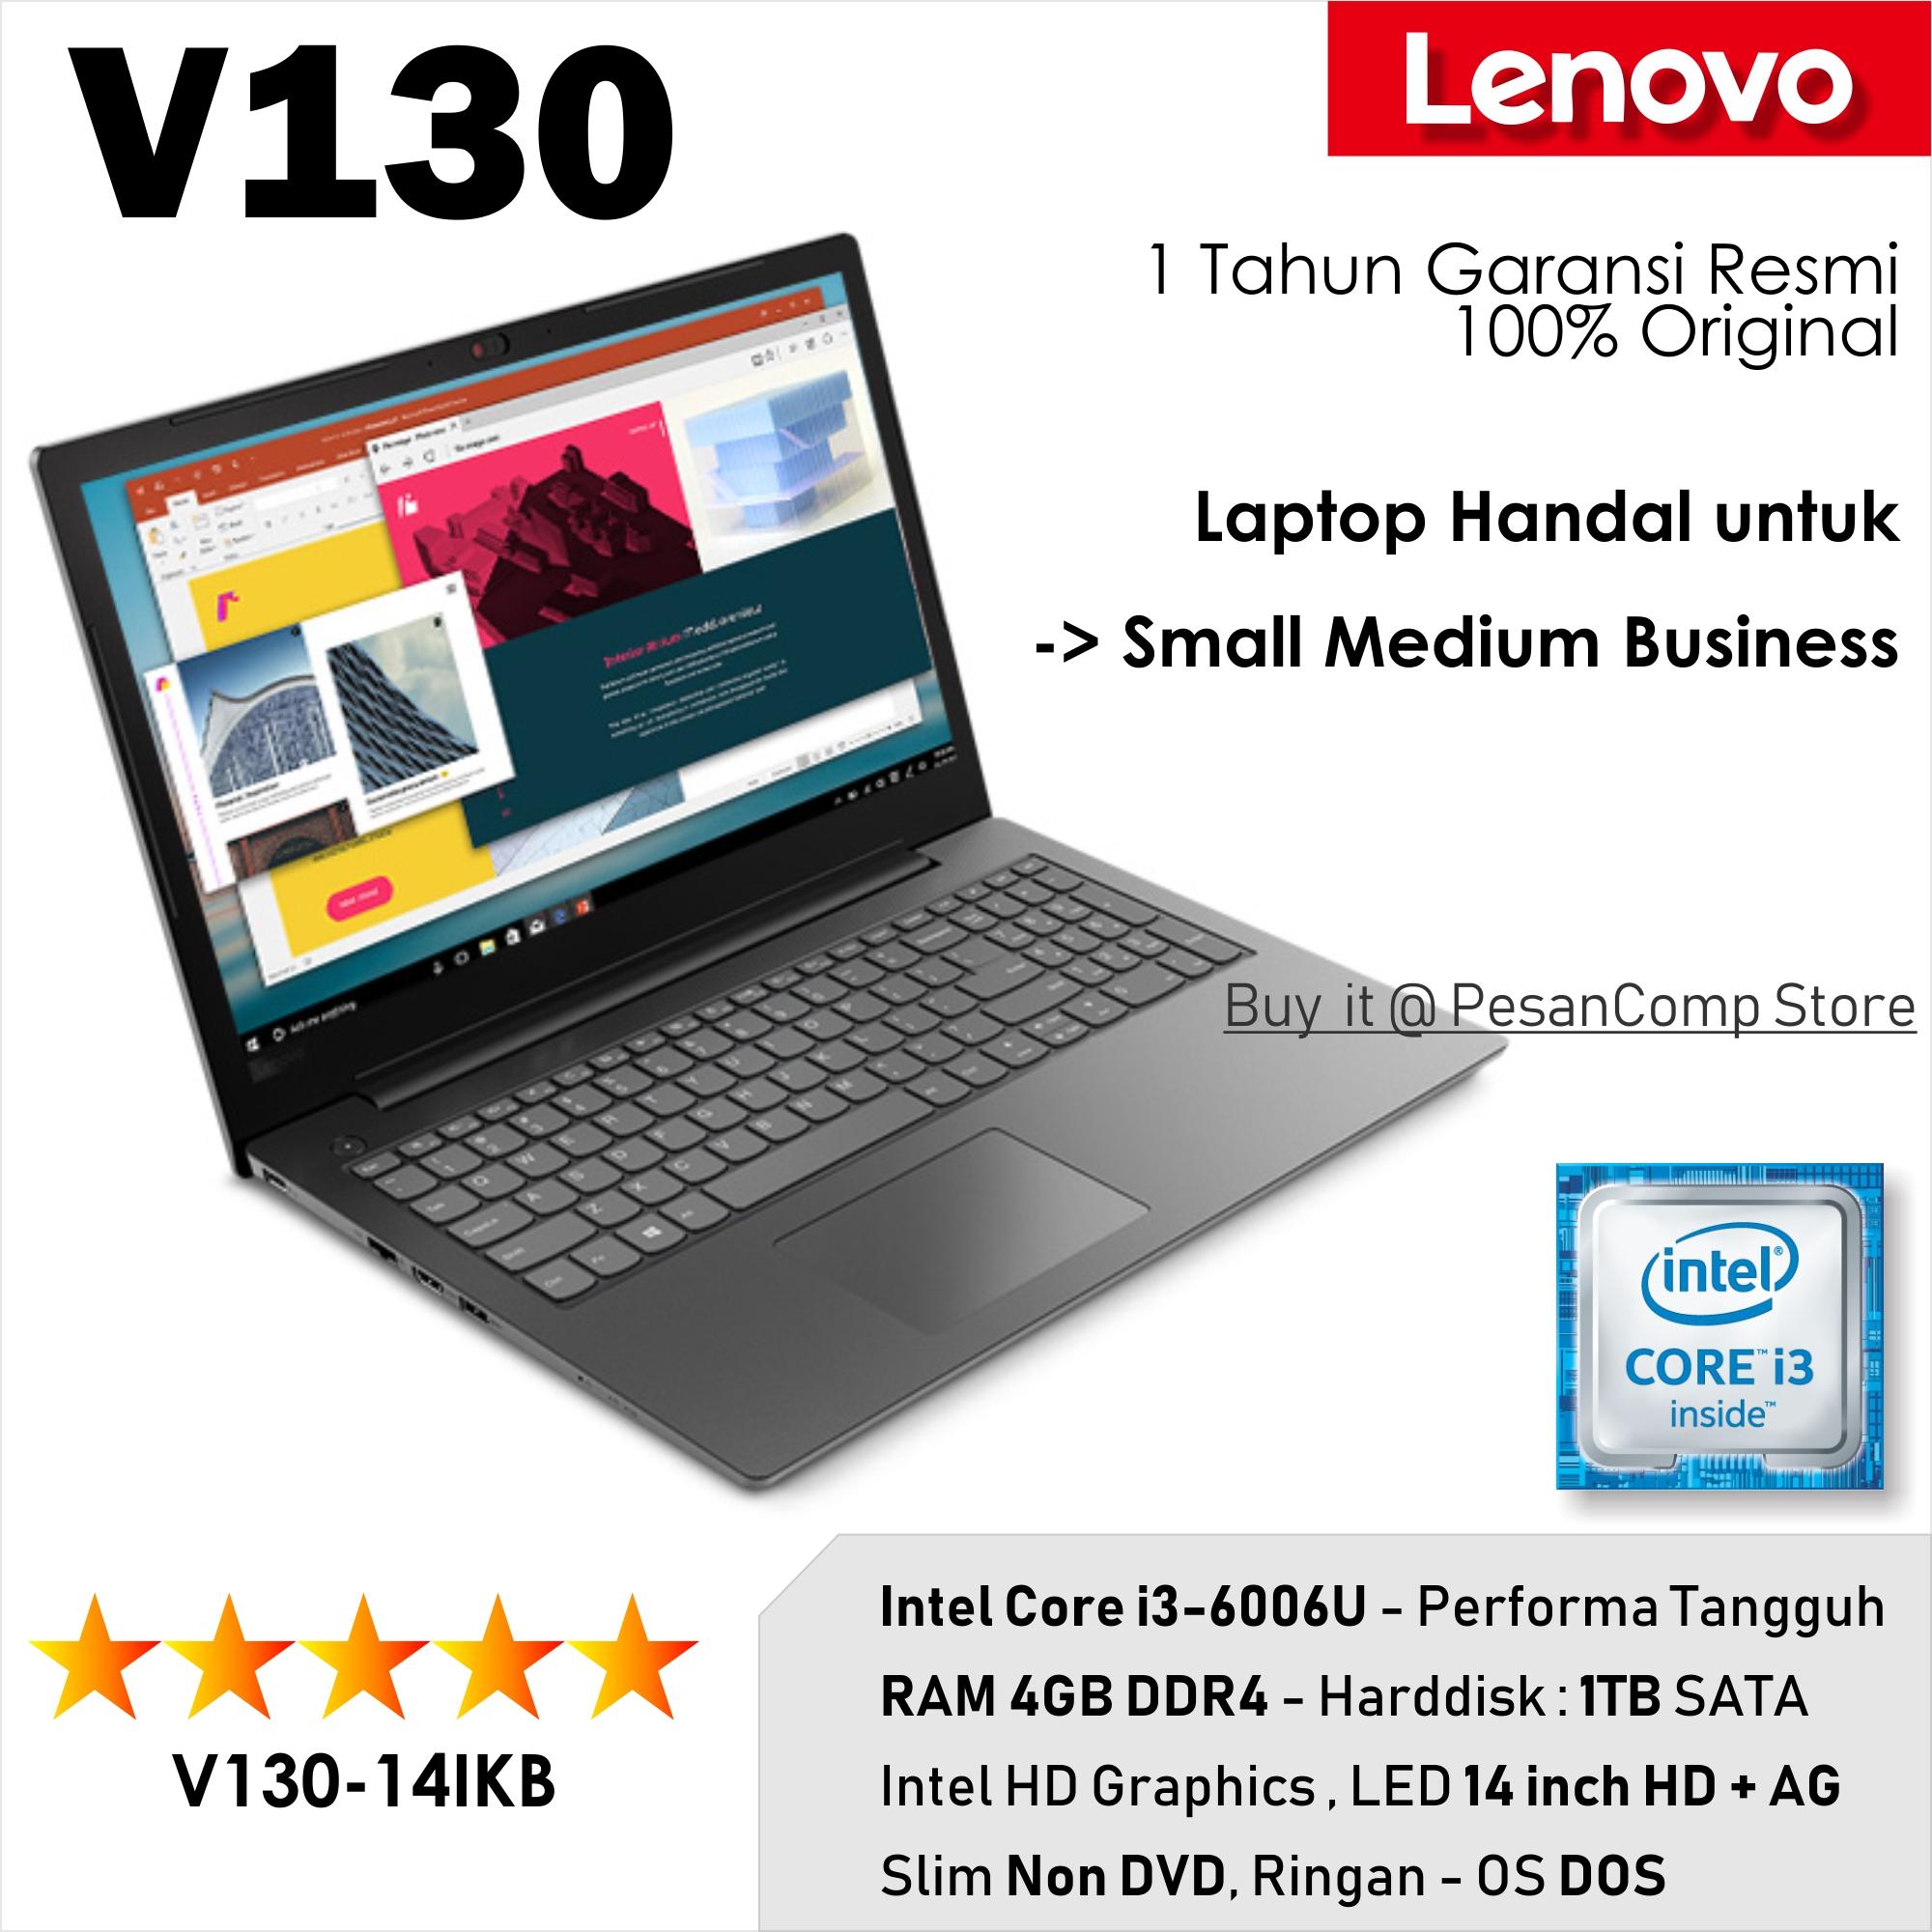 Lenovo V130 -14IKB HEID intel core i3 4GB 1TB Dos 14 inch intel HD 1 Tahun Garansi Resmi